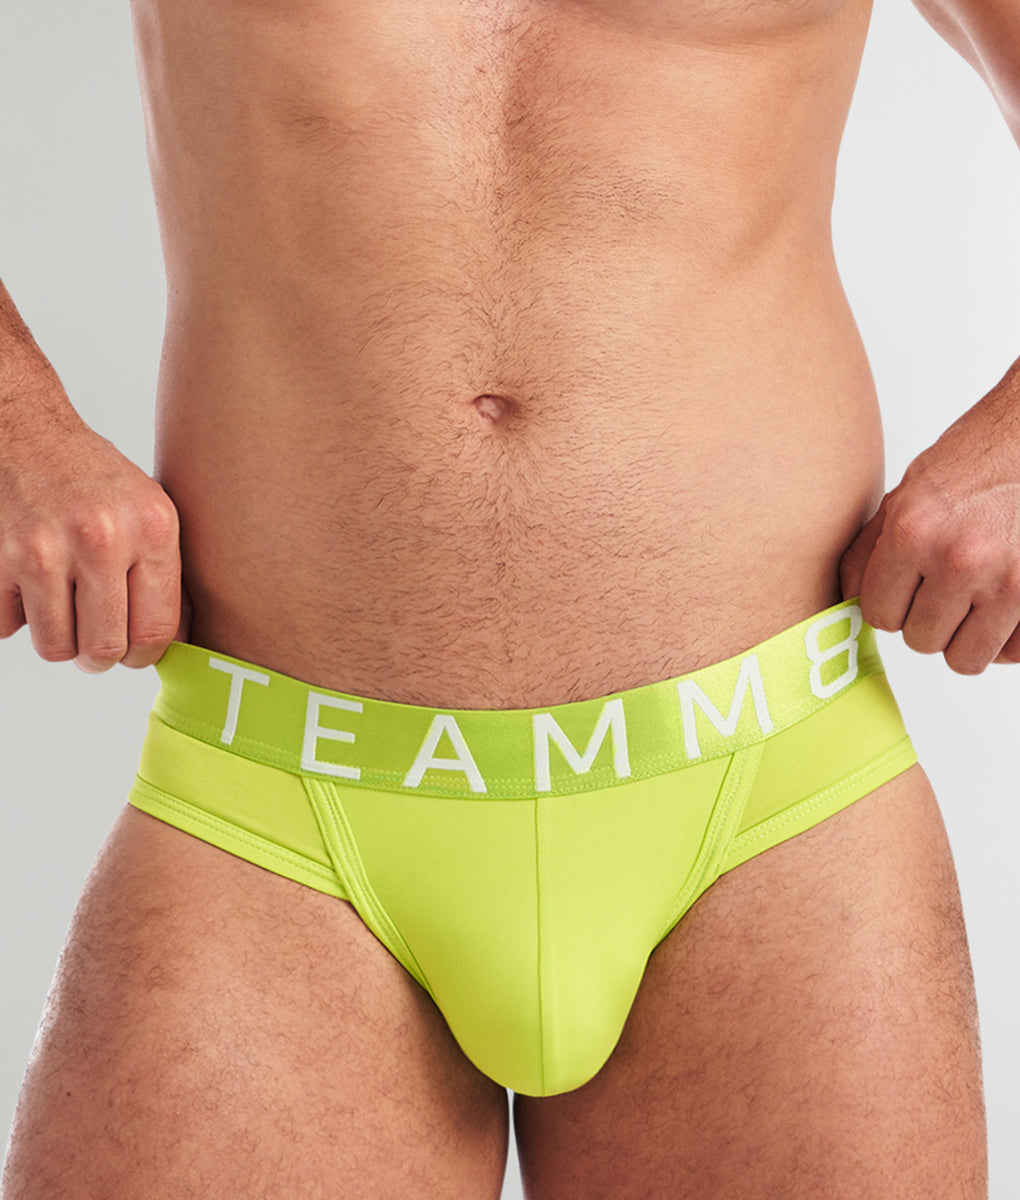 Teamm8 Aerial Mesh Brief - Underwear Expert